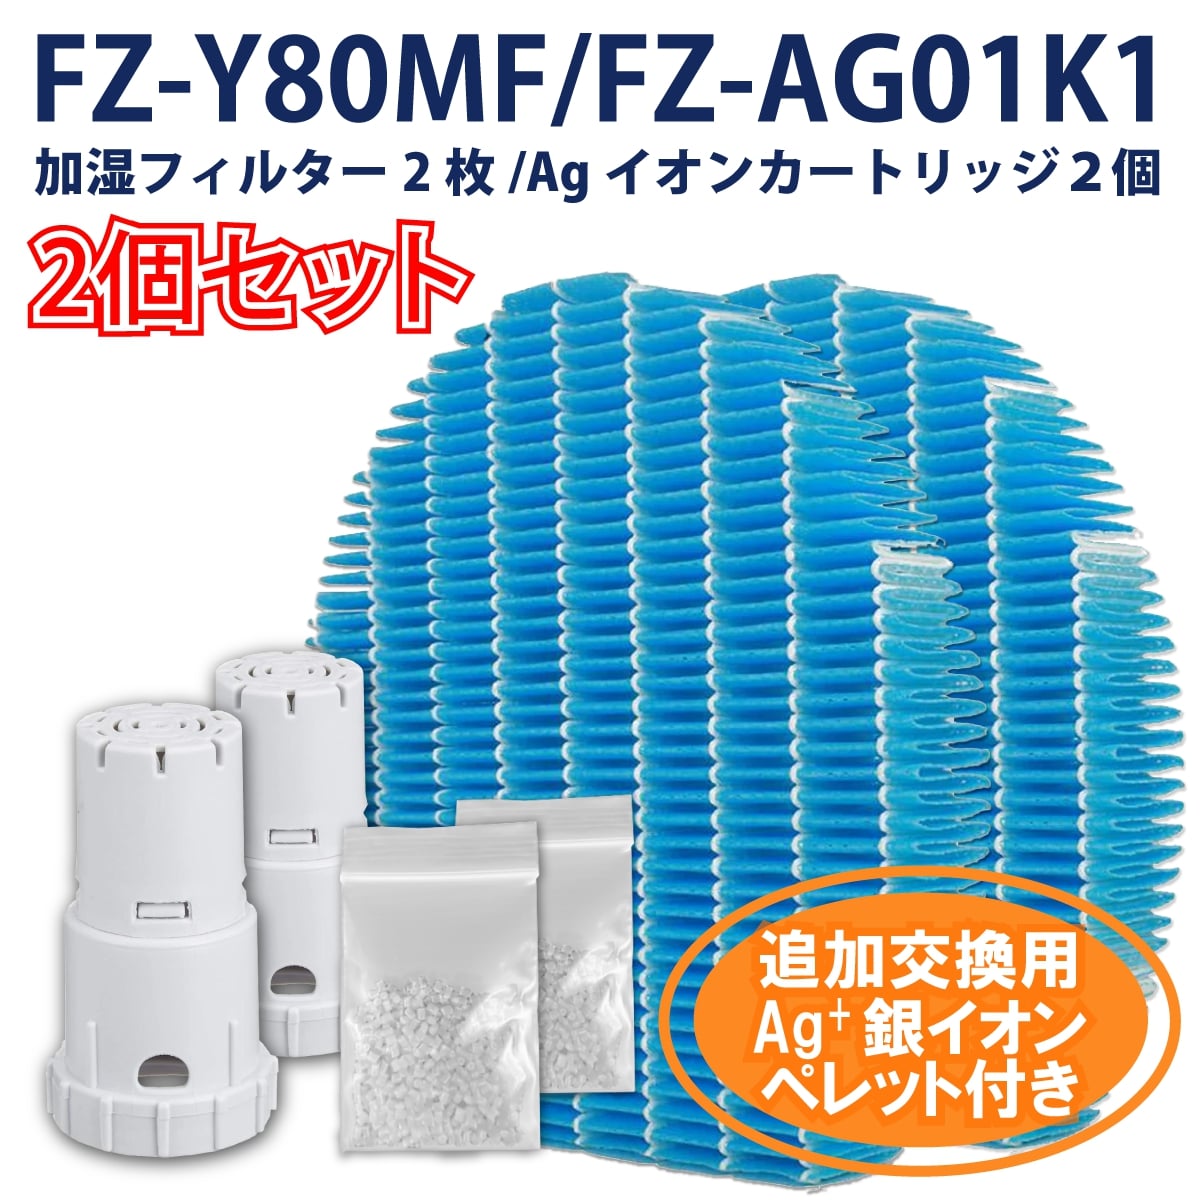 人気提案 2個セット SHARP 互換品 FZ-AG01K1 シャープ 加湿空気清浄機